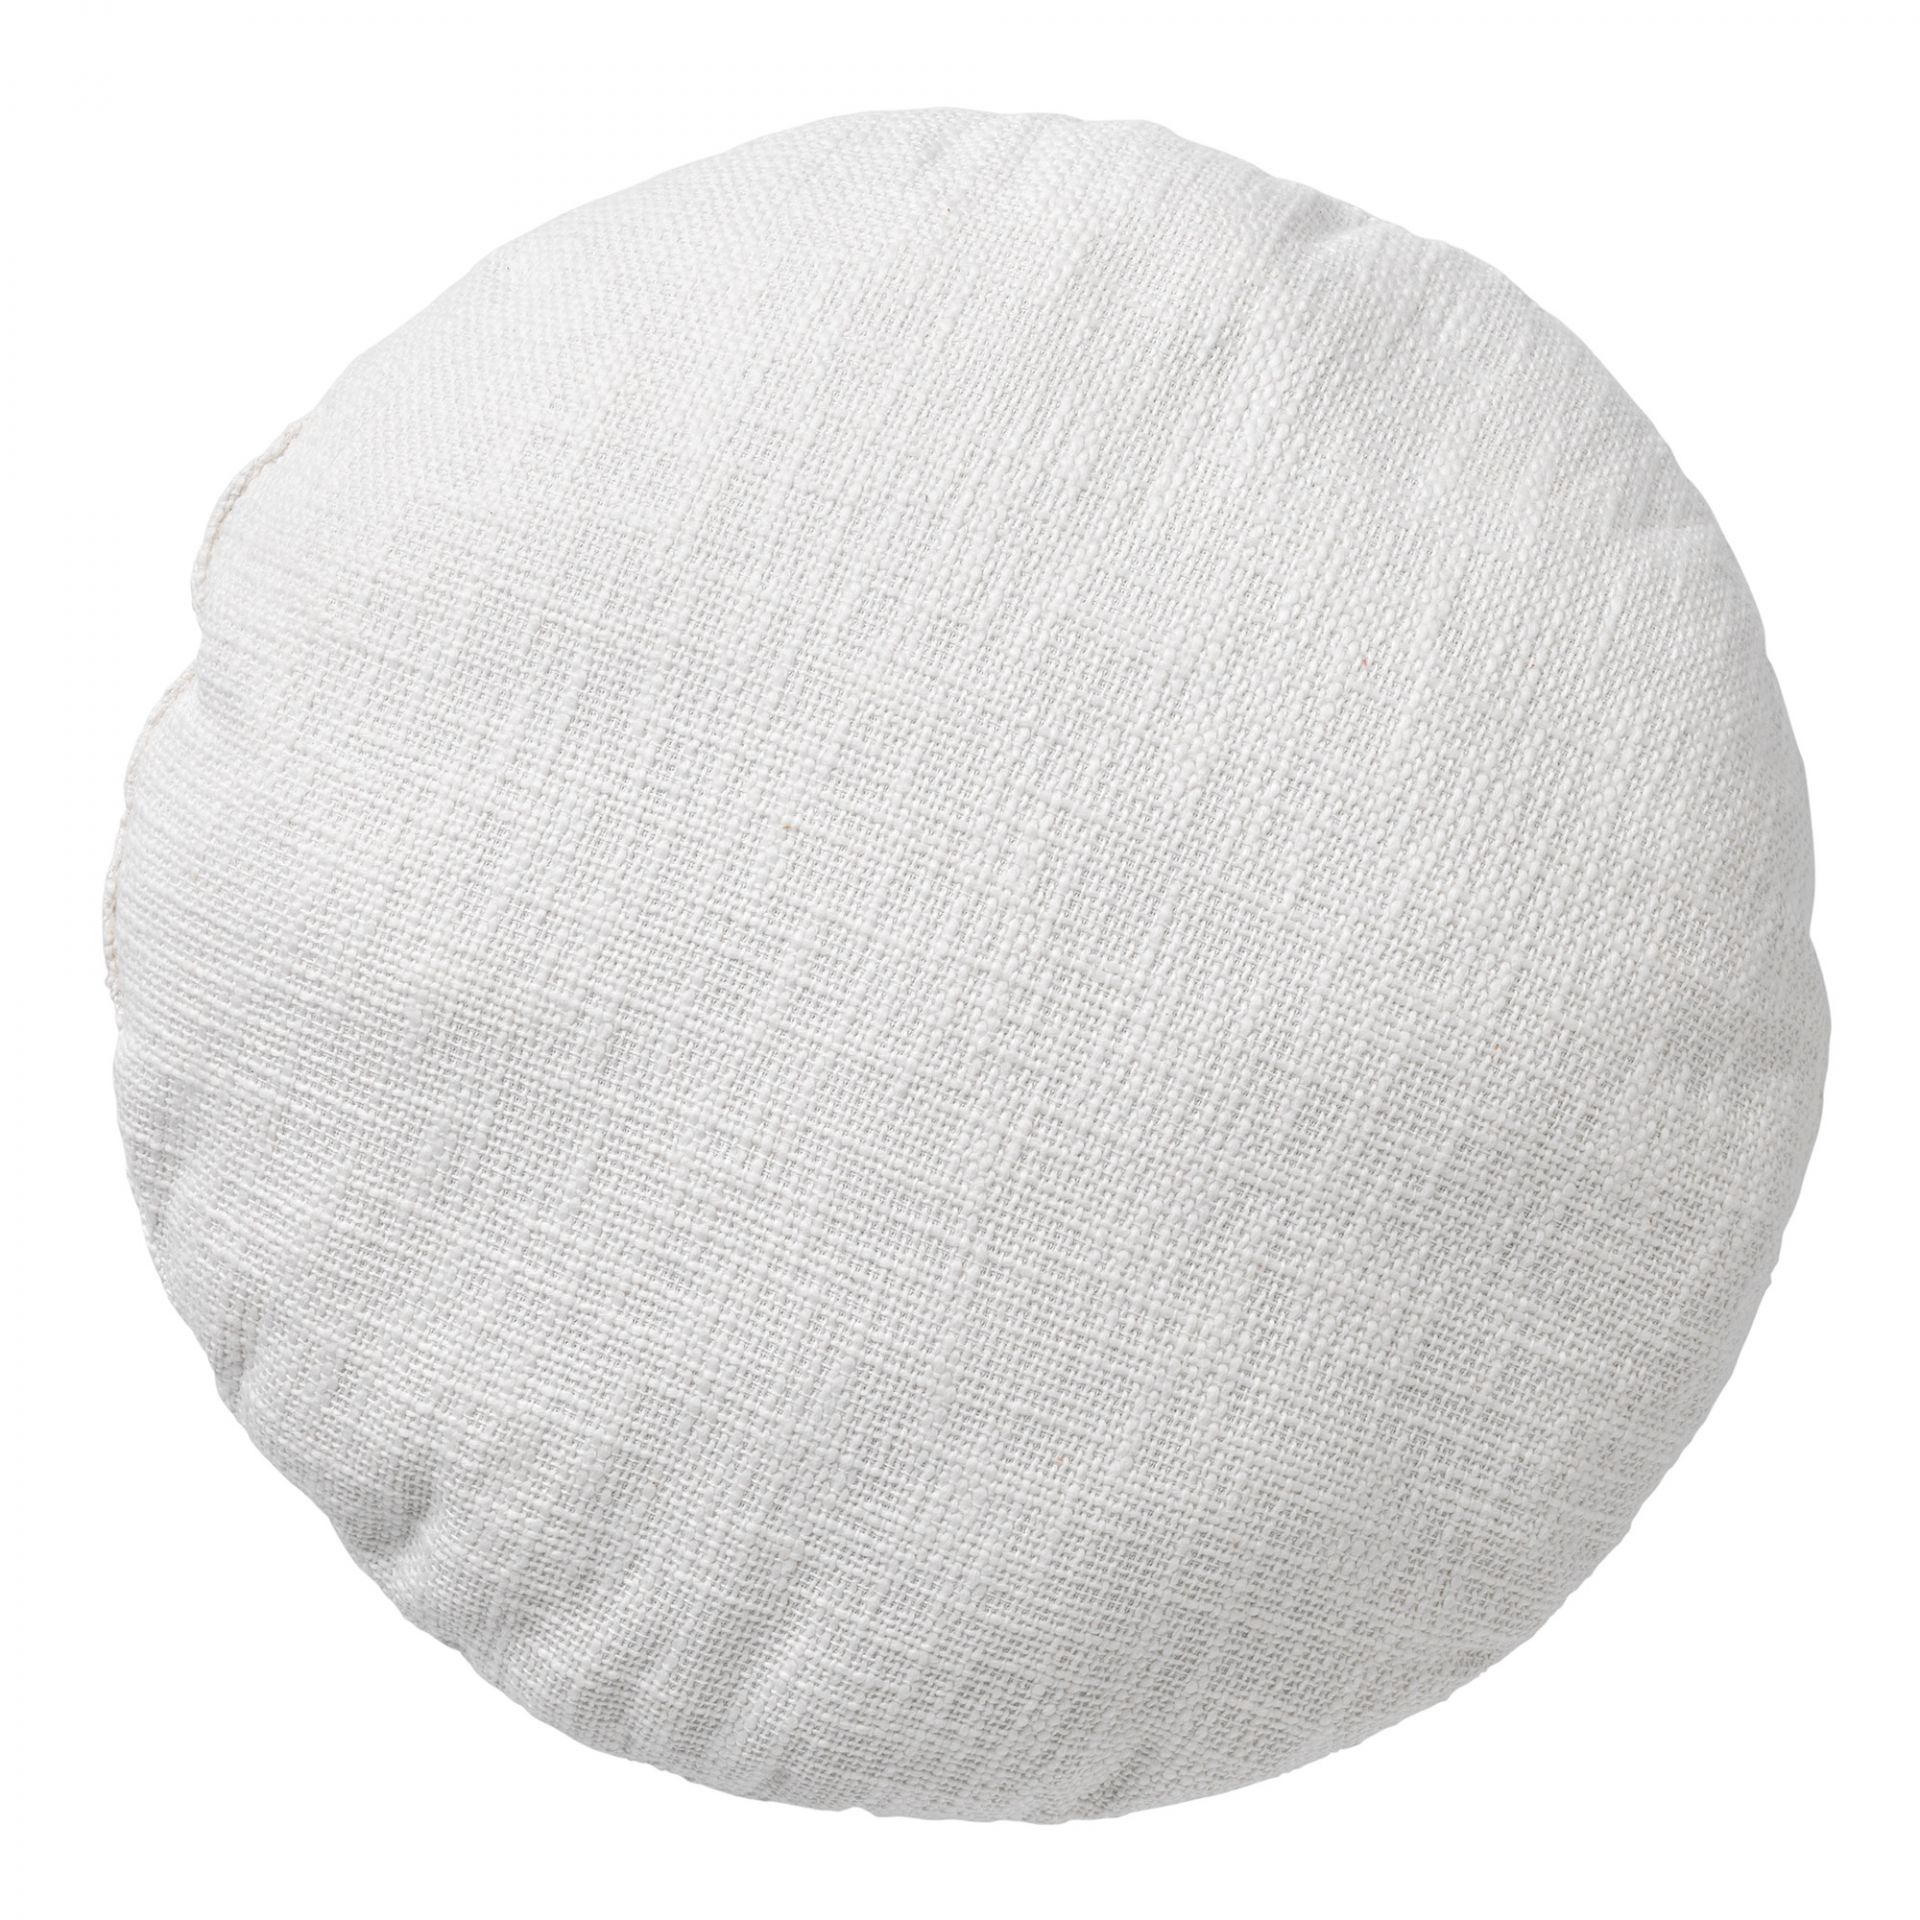 ABEY - Cushion cotton 50 cm Snow White - white